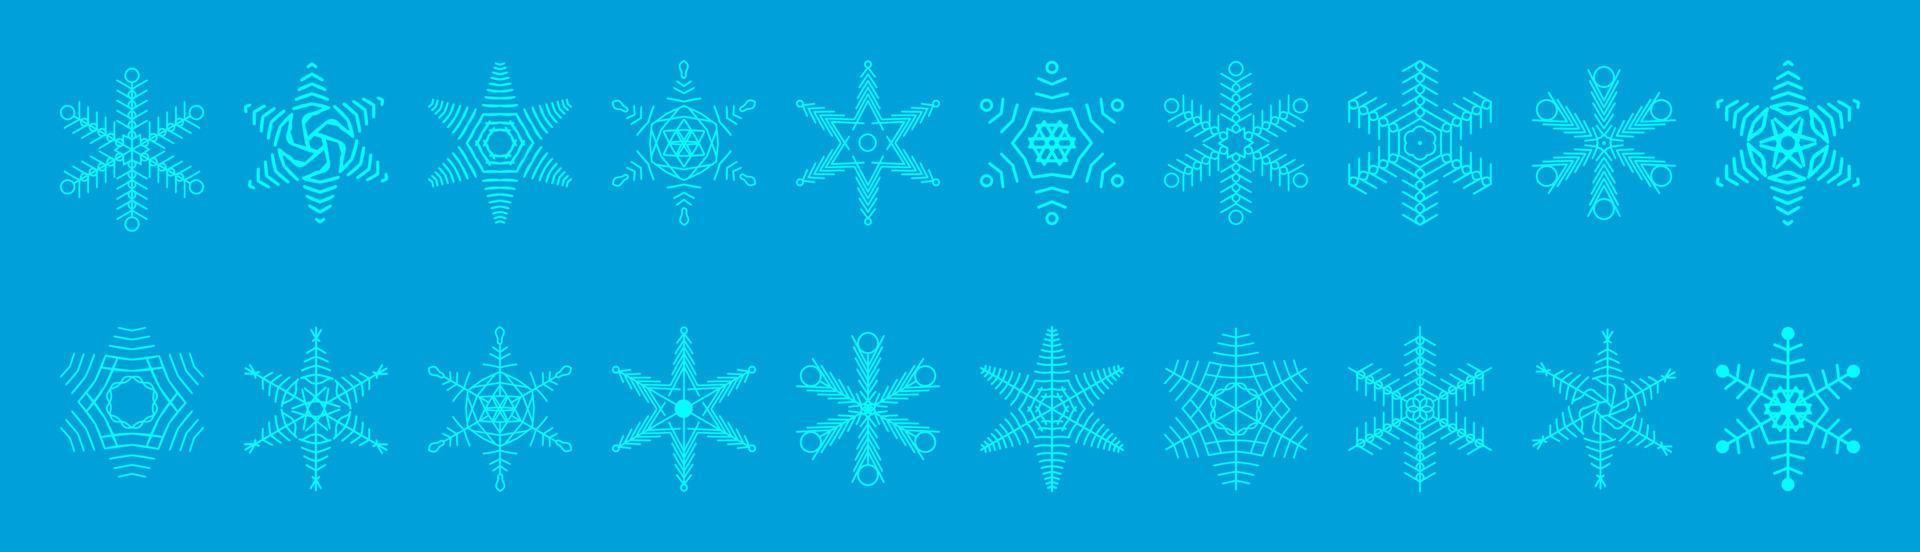 ensemble de collection de silhouettes de flocons de neige, conception de noël, illustration d'icônes mignonnes de flocon de neige vecteur